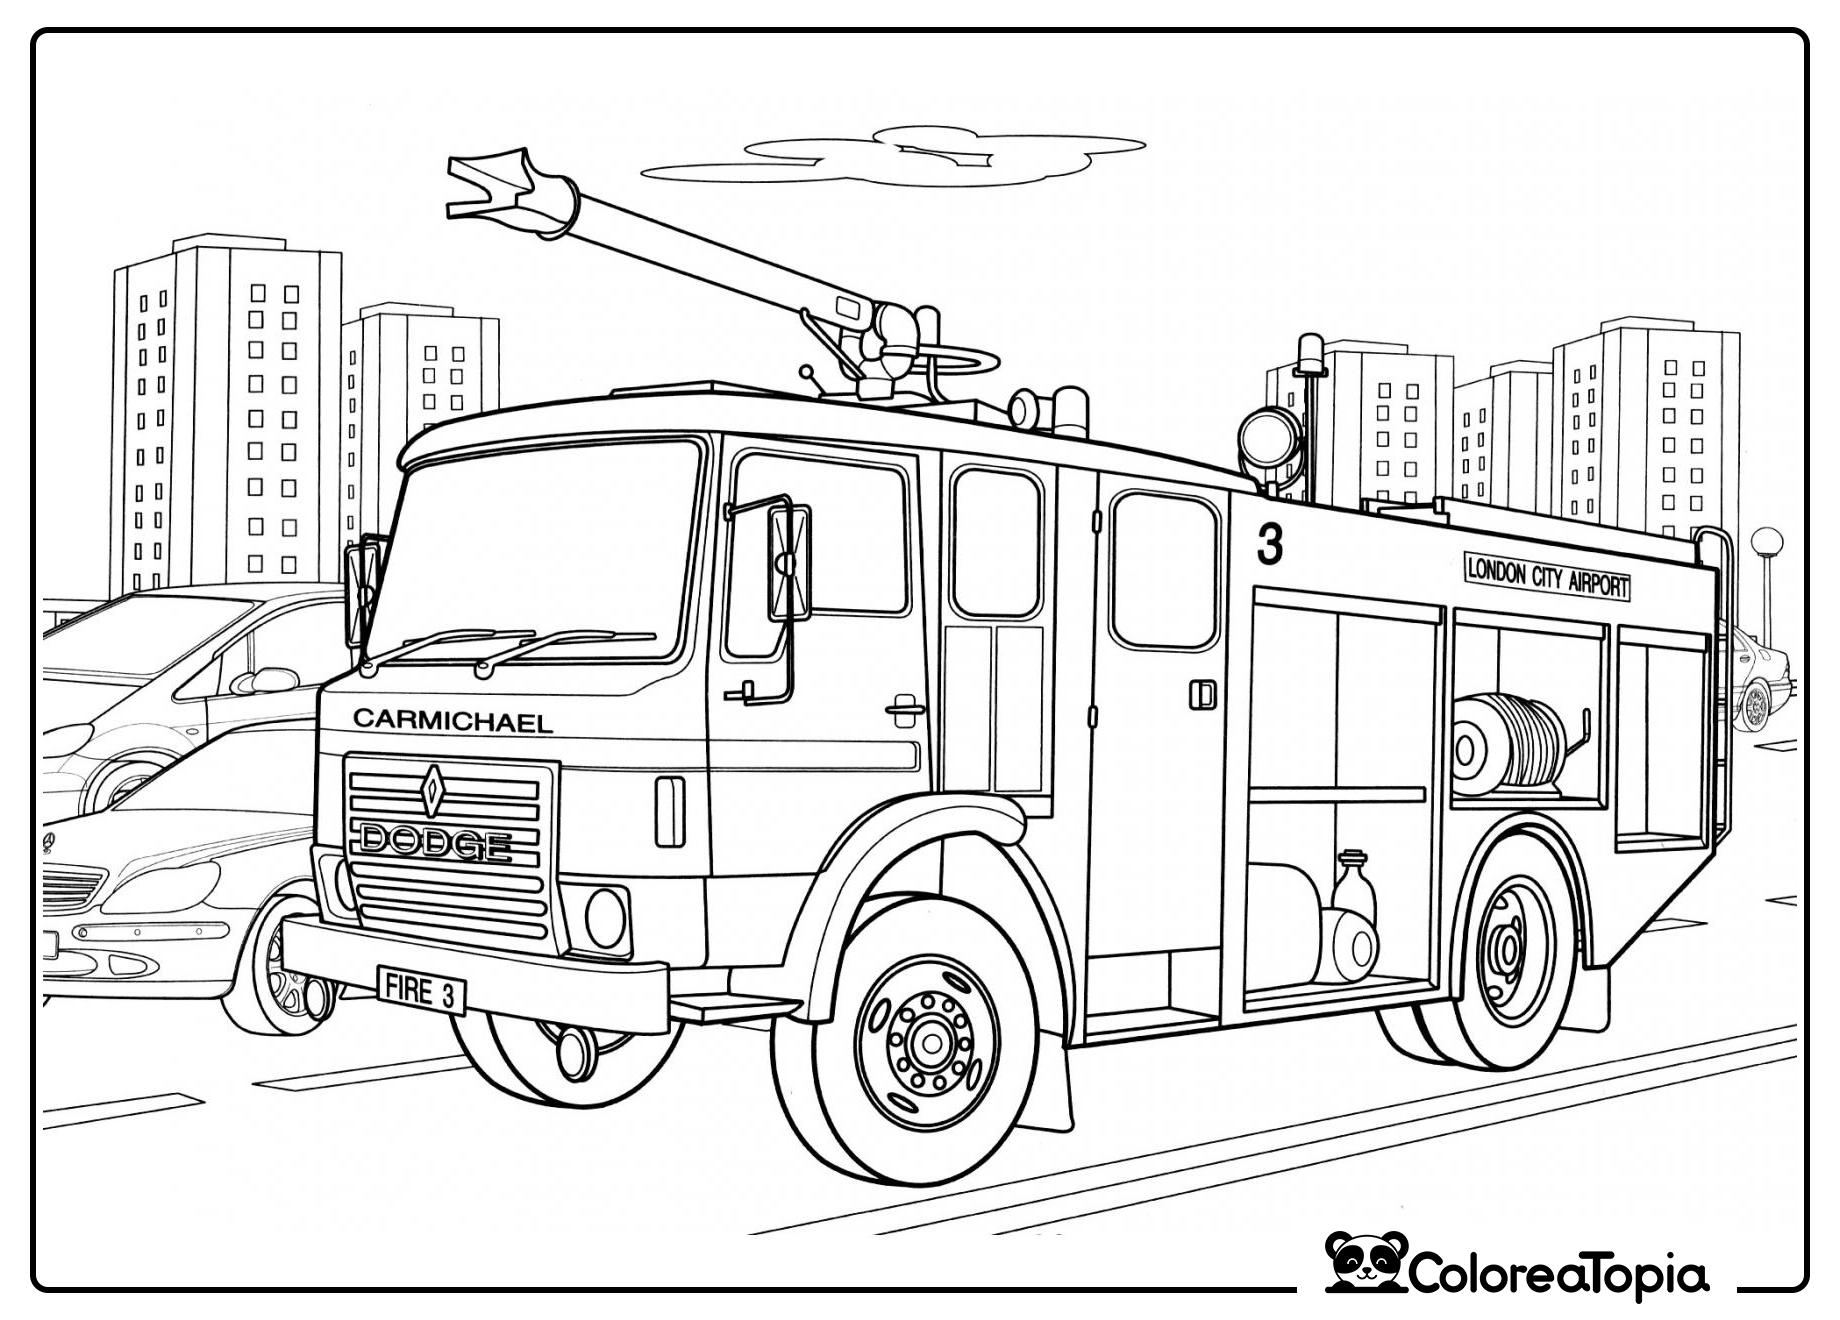 Vehículo de bomberos del aeropuerto - dibujo para colorear